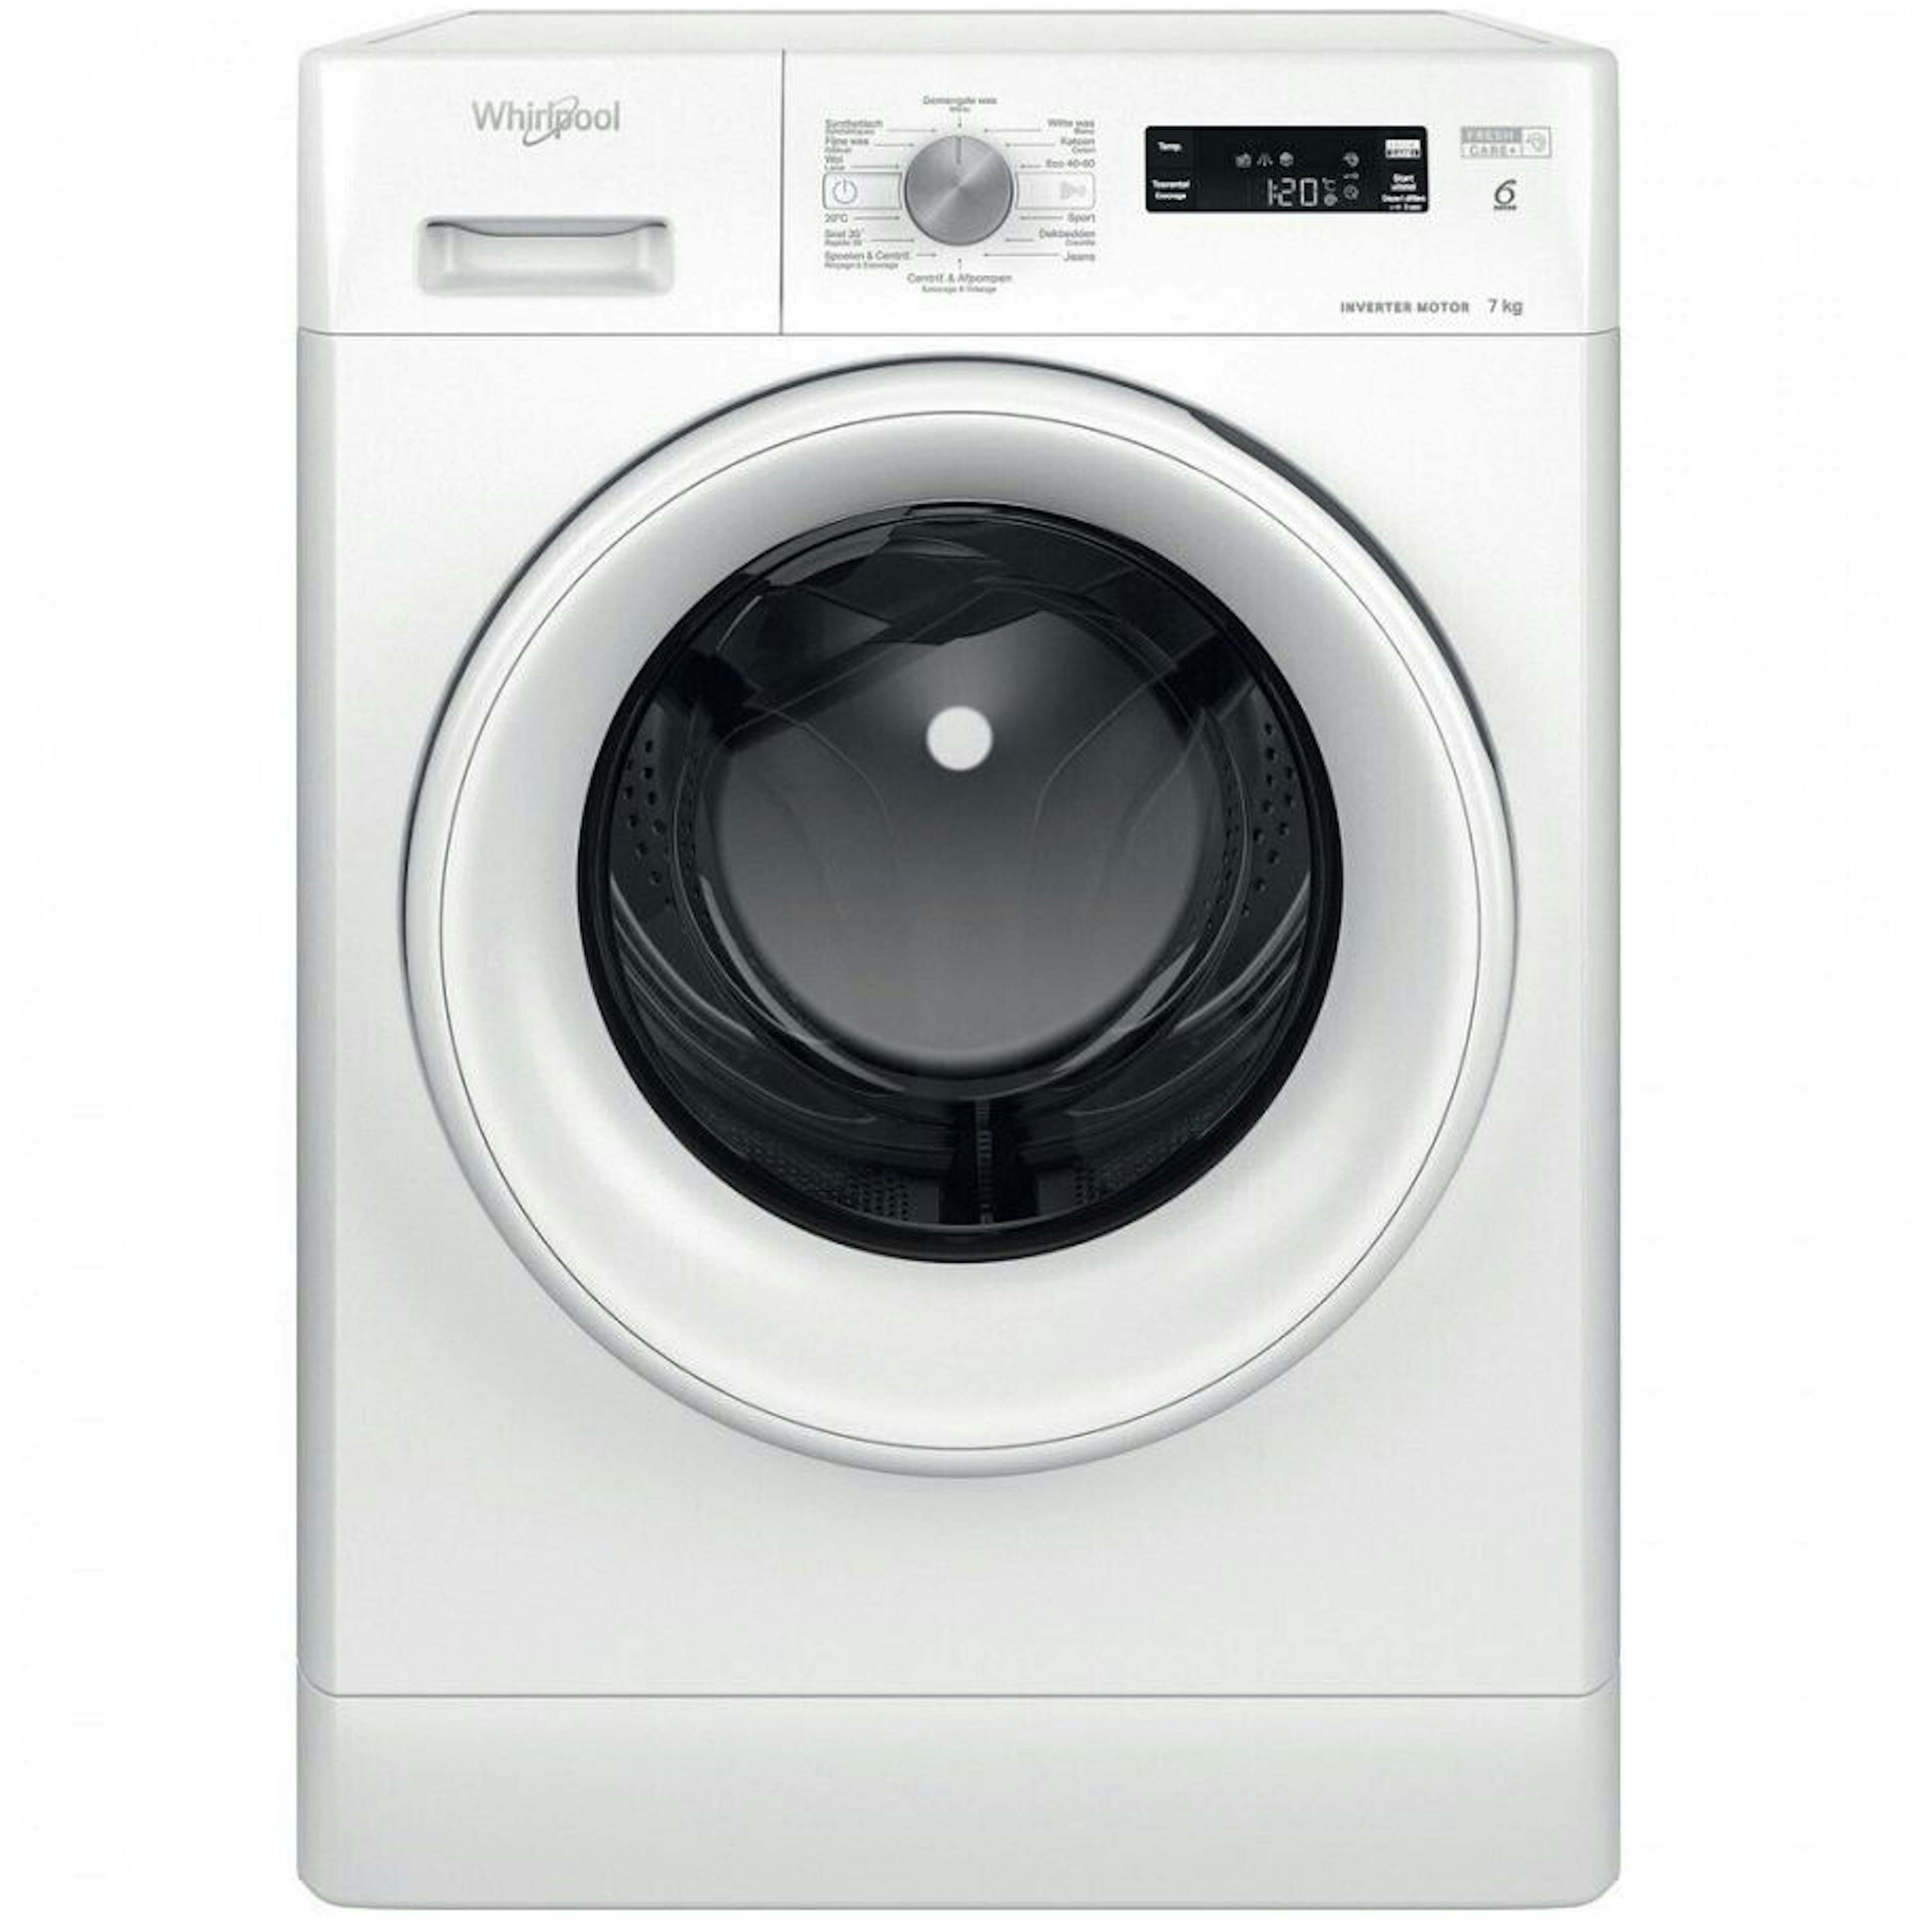 Alsjeblieft kijk Bederven Oefenen Goedkope wasmachine kopen? - Bekijk onze goedkoopste wasmachines